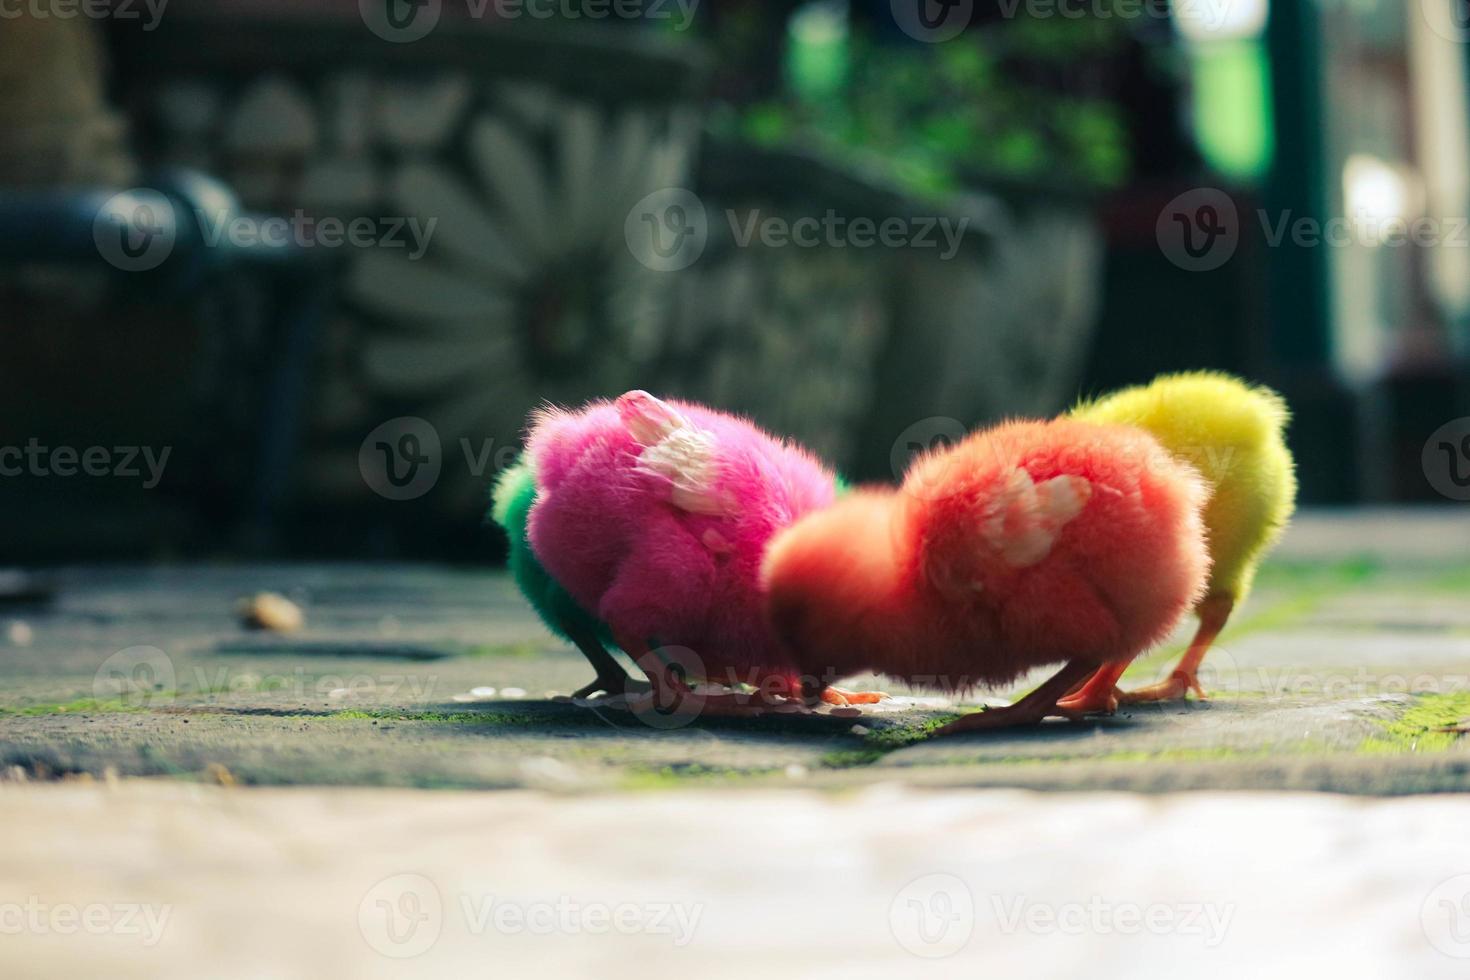 c'est une photo des poussins peints de couleurs vives.